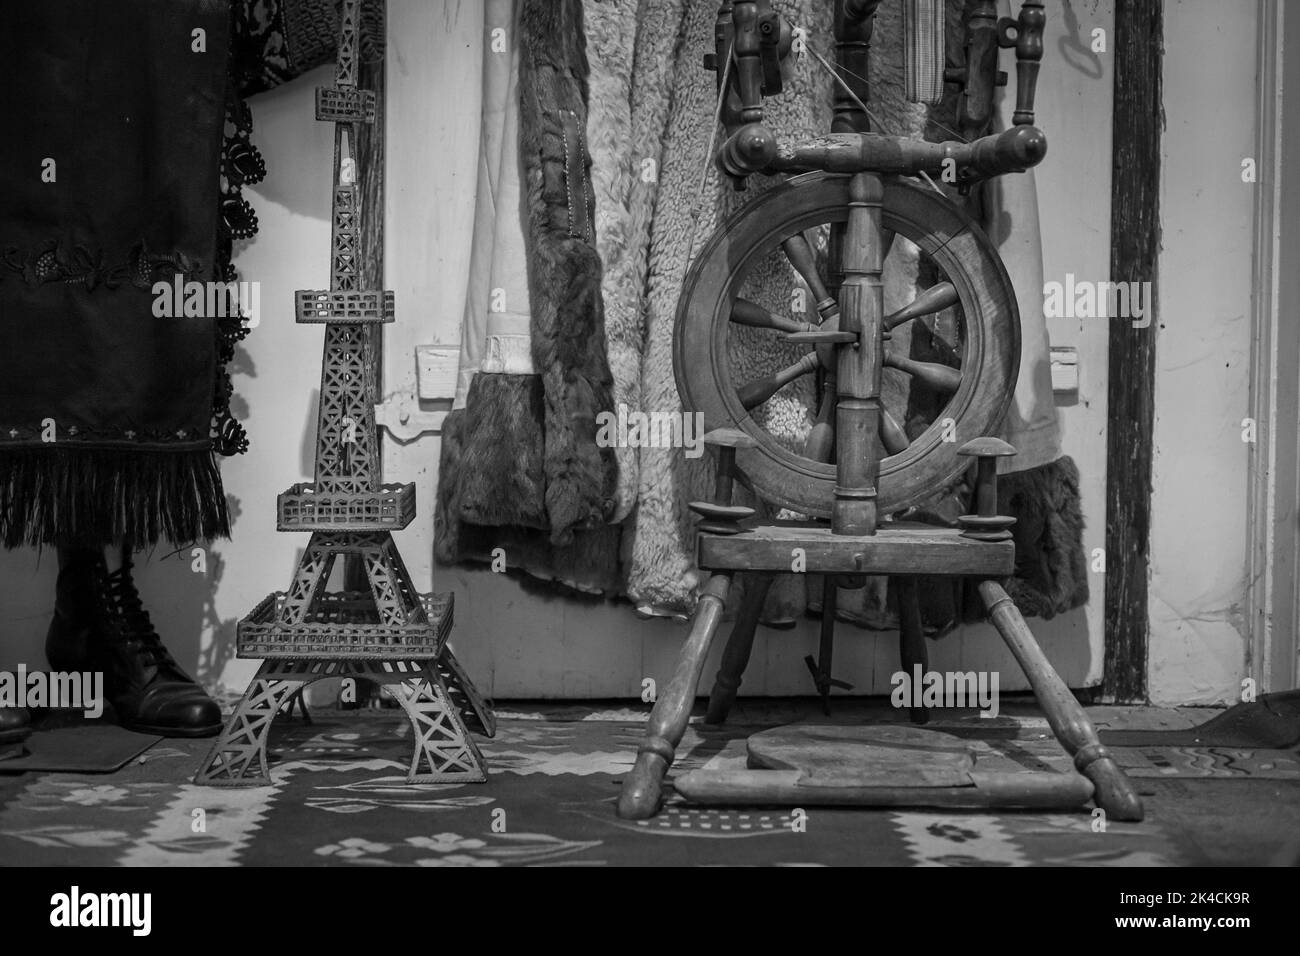 La vista in scala di grigi di una ruota rotante in legno, statuette, cappotti e stivali da donna sul tappeto di una stanza Foto Stock